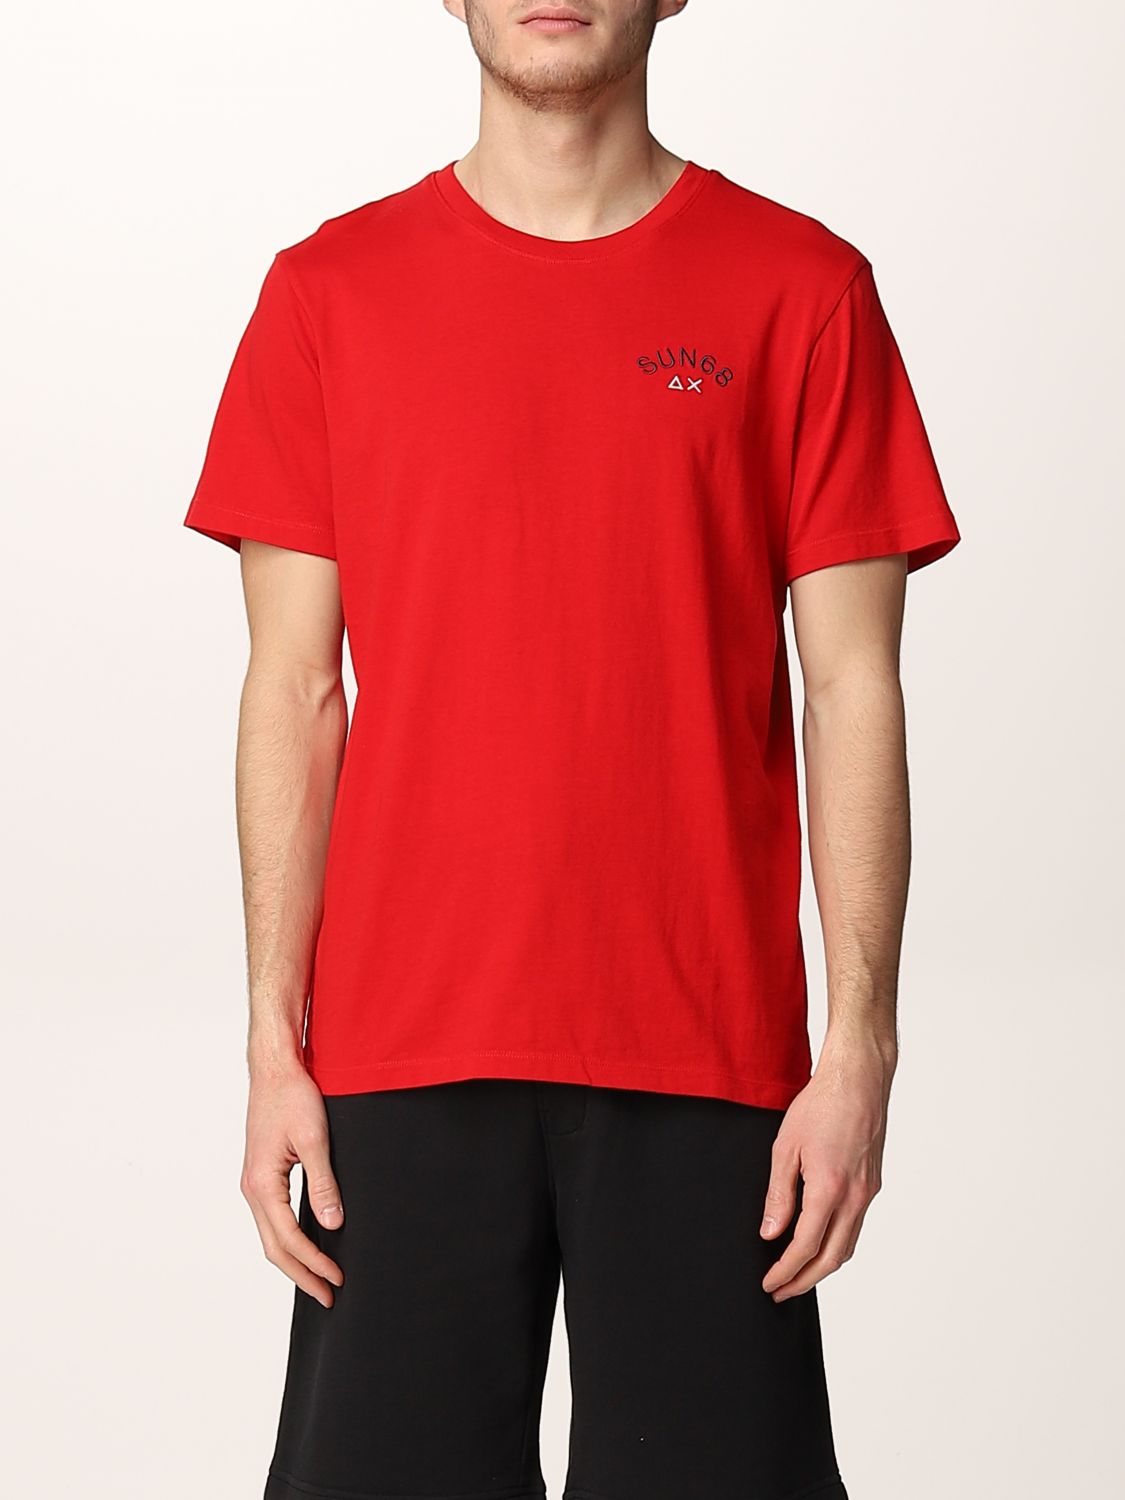 SUN 68: cotton t-shirt with logo - Red | Sun 68 t-shirt T32104 online ...